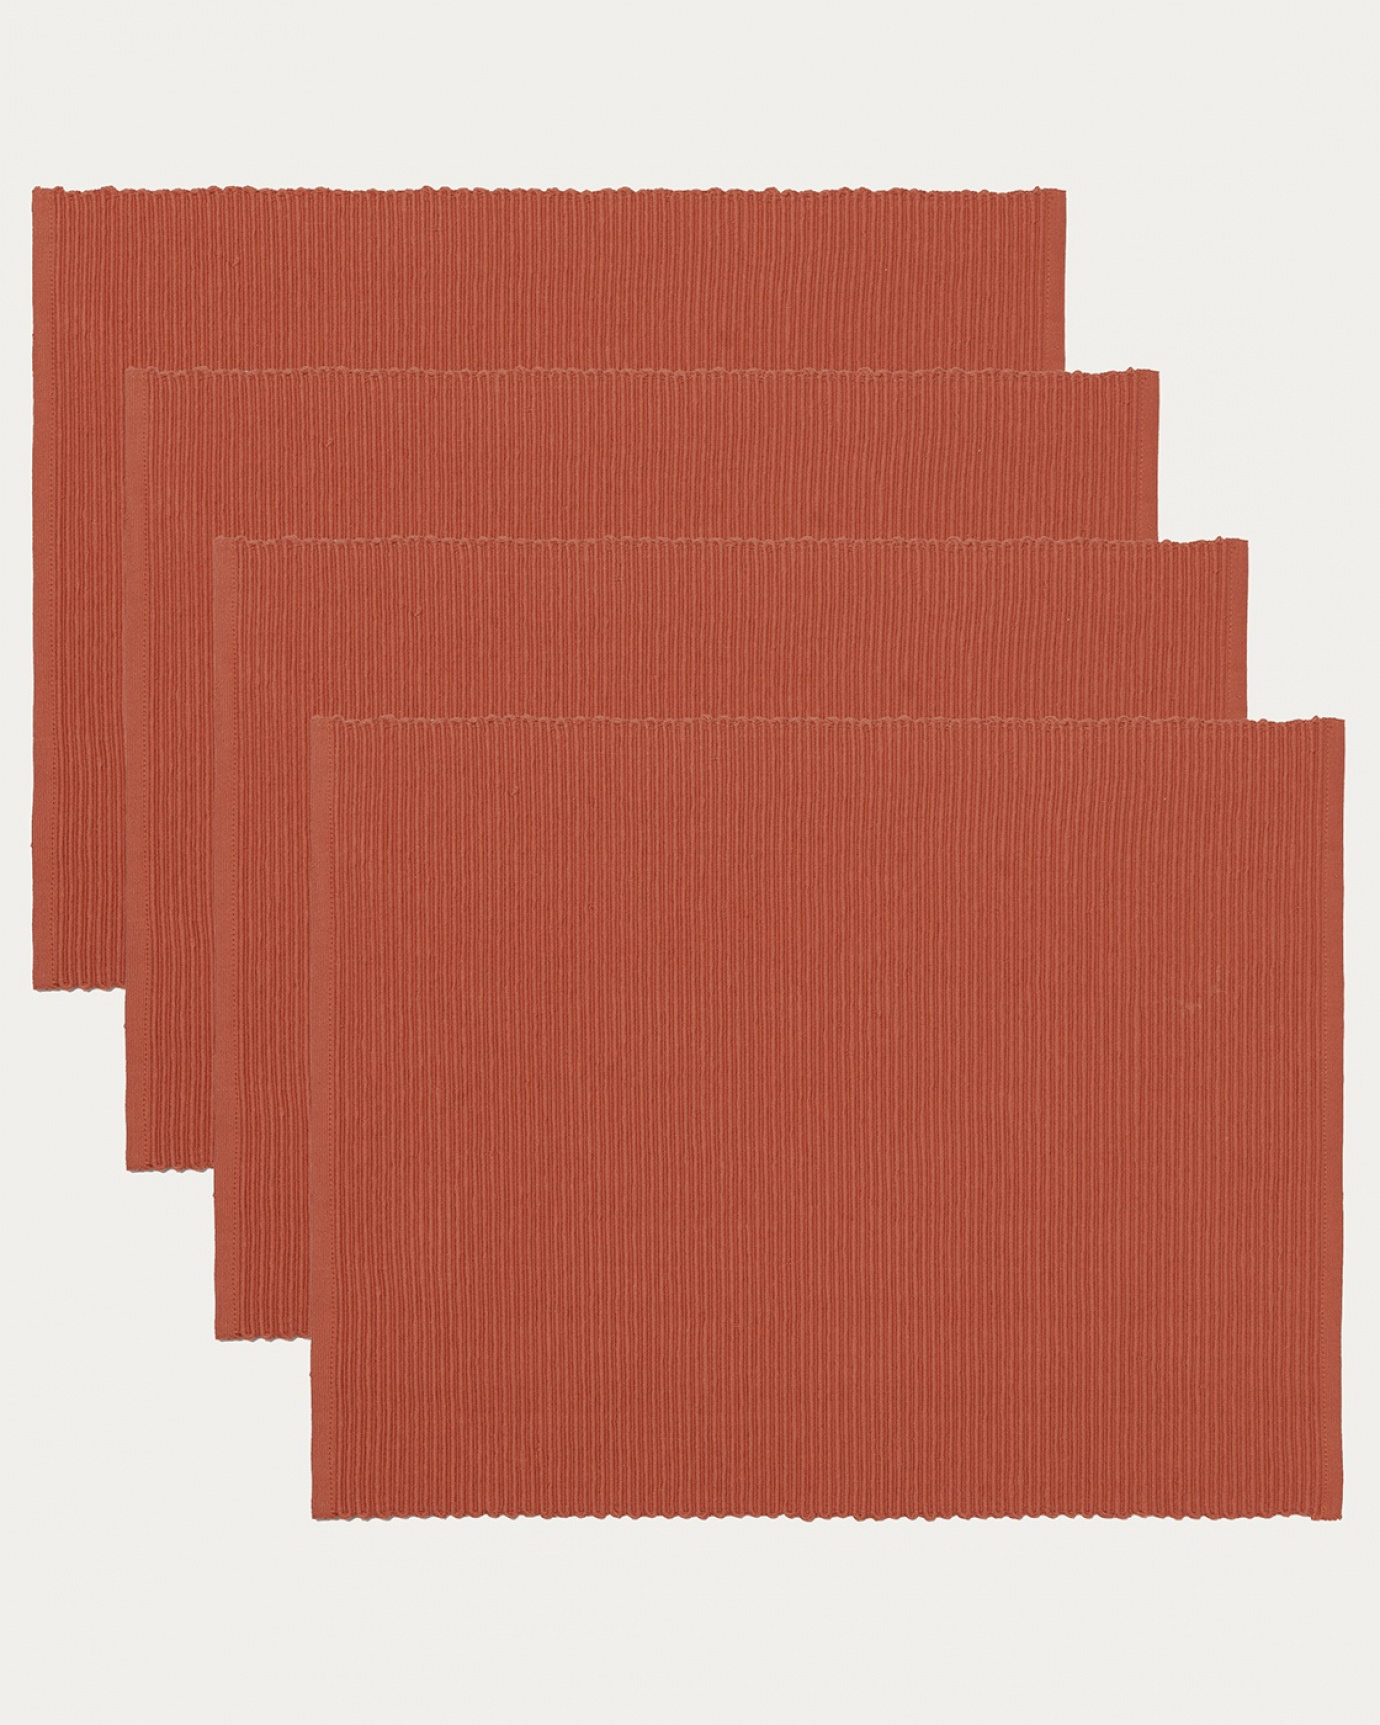 Produktbild rostorange UNI bordstablett av mjuk bomull i ribbad kvalité från LINUM DESIGN. Storlek 35x46 cm och säljs i 4-pack.